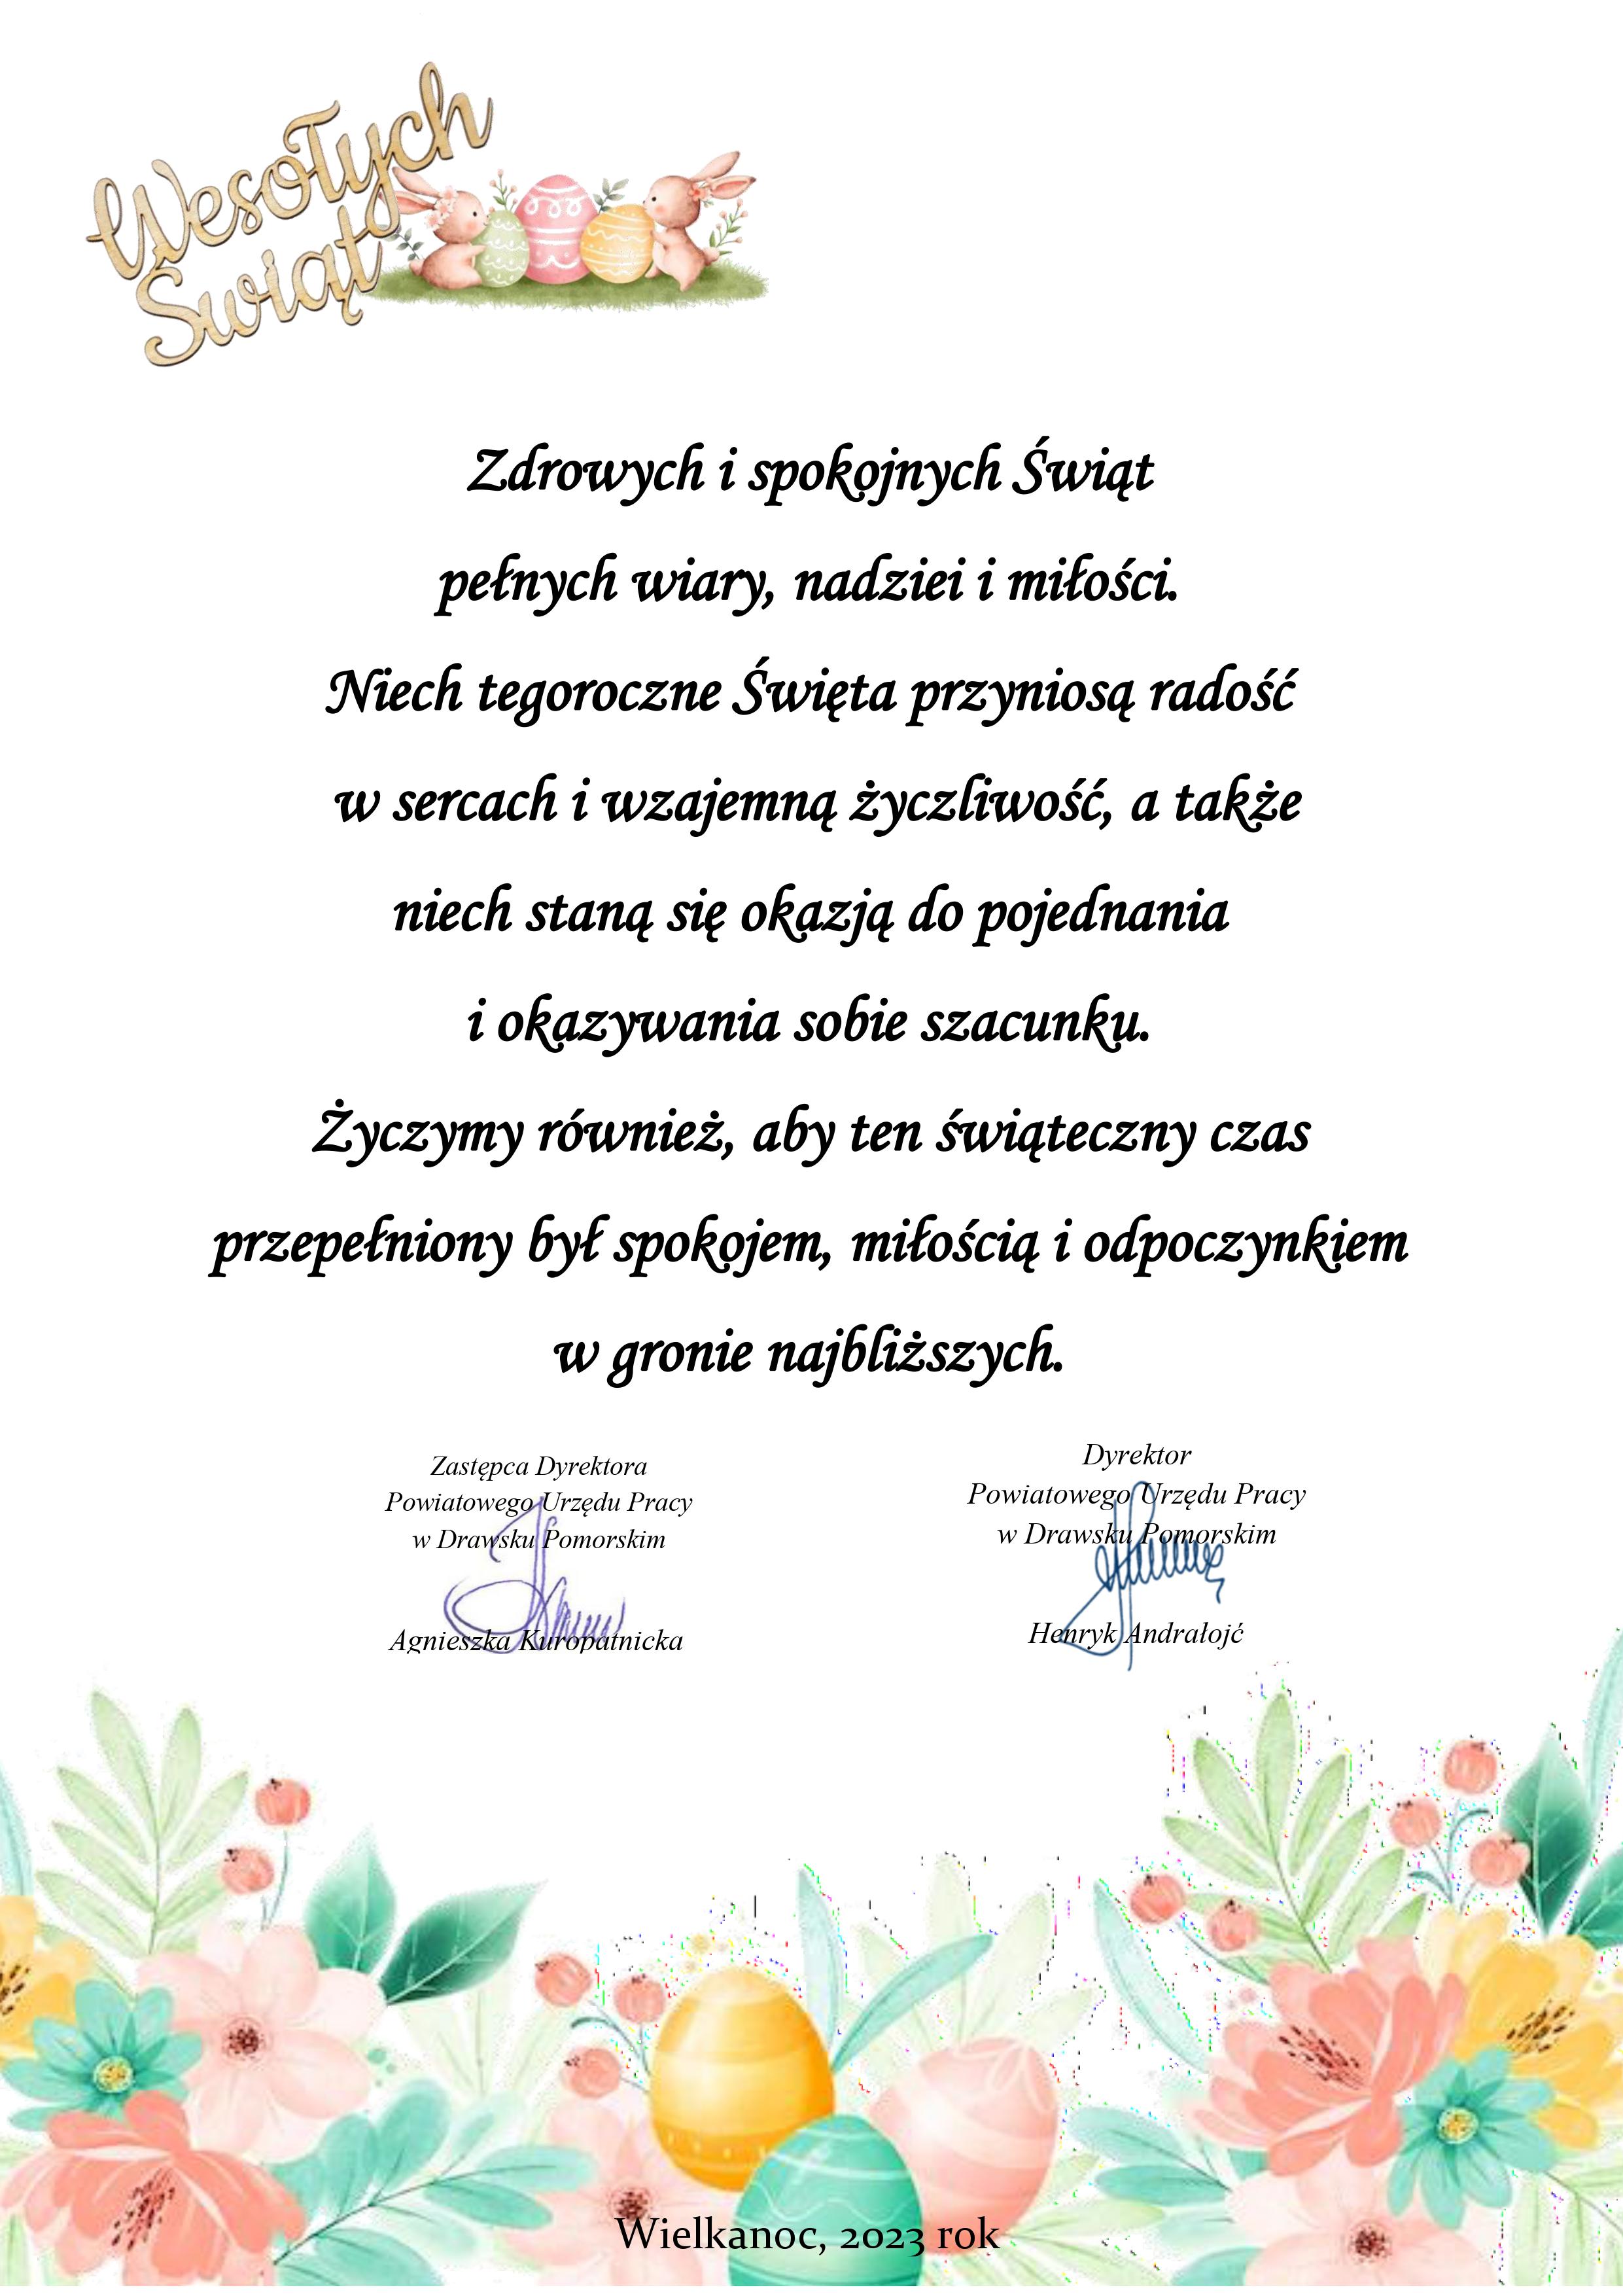 Życzenia okazji świąt wielkanocnych od Dyrekcji Powiatowego Urzędu Pracy w Drawsku Pomorskim